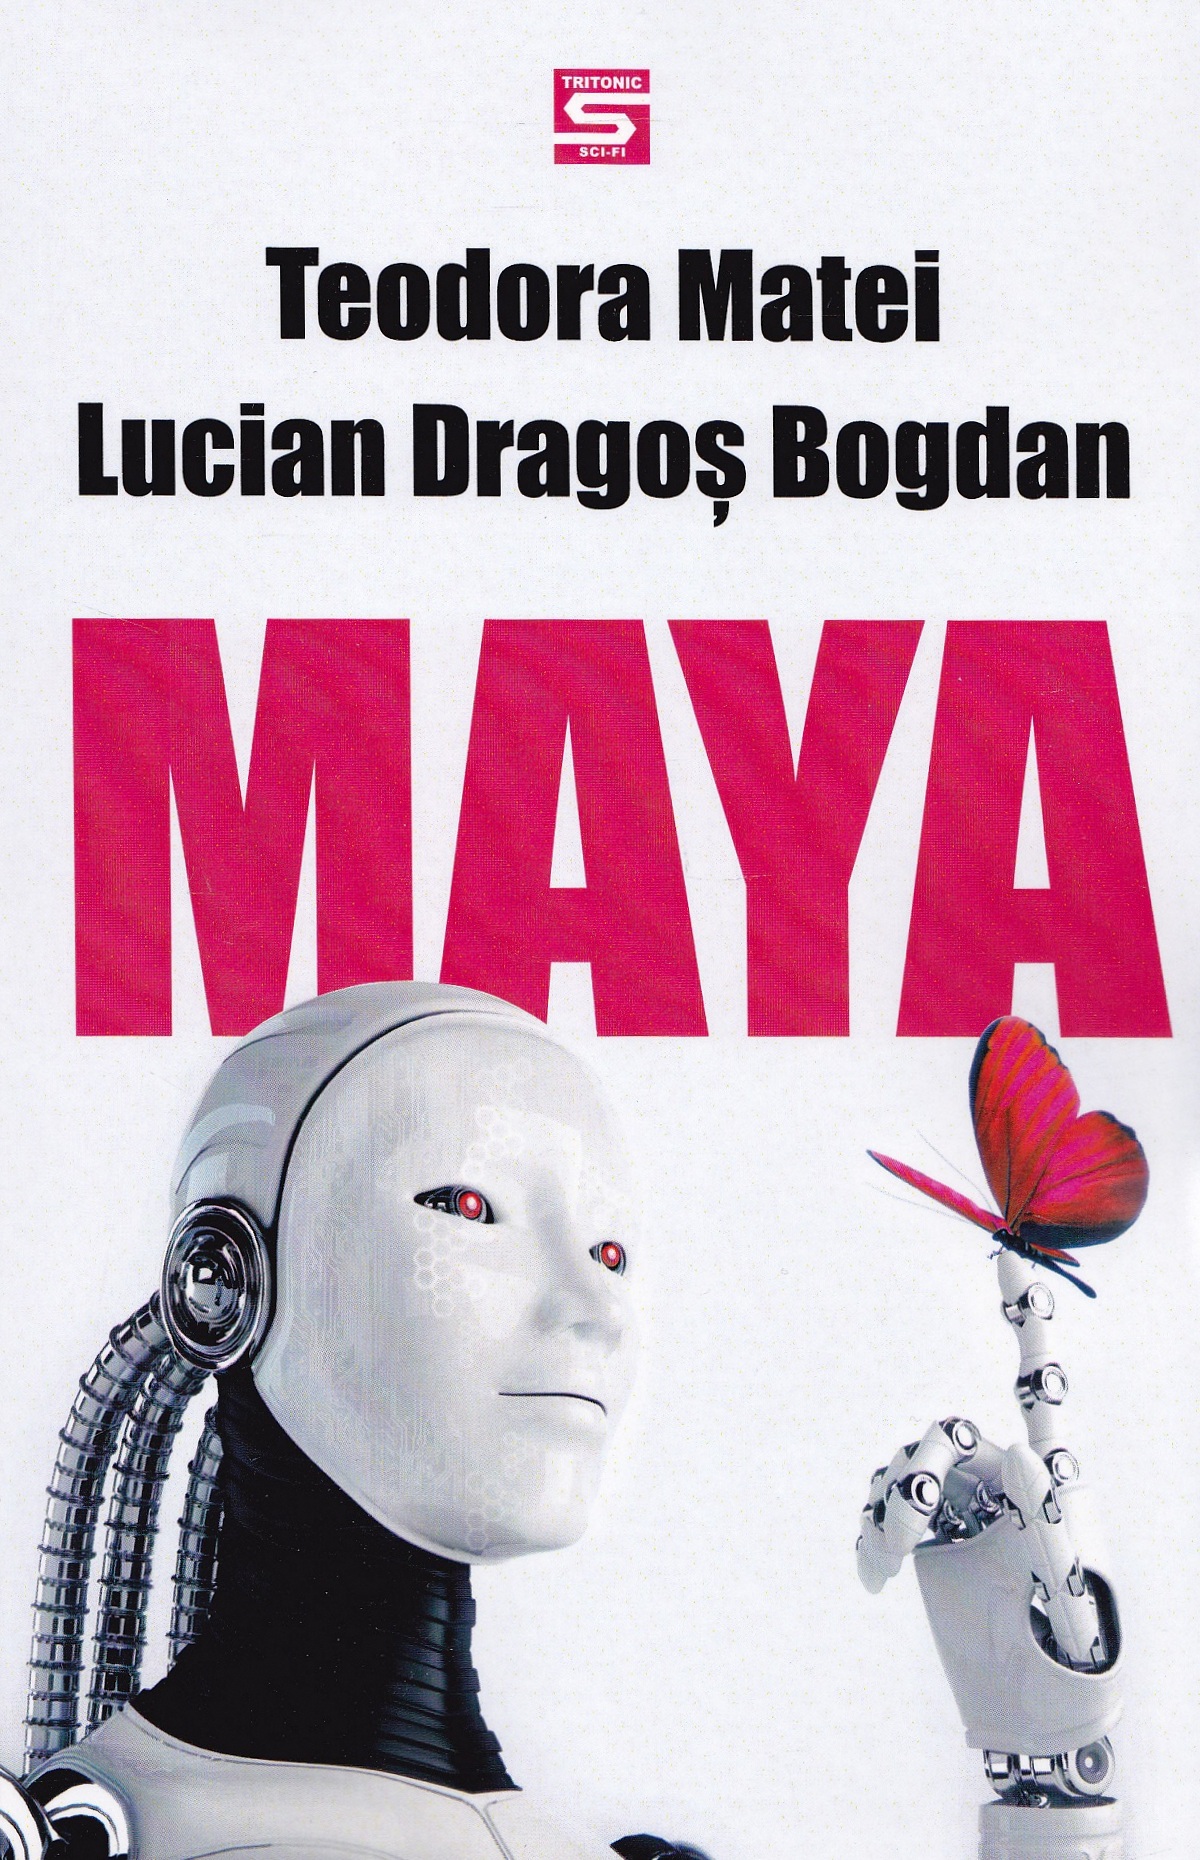 Maya - Teodora Matei, Lucian Dragos Bogdan